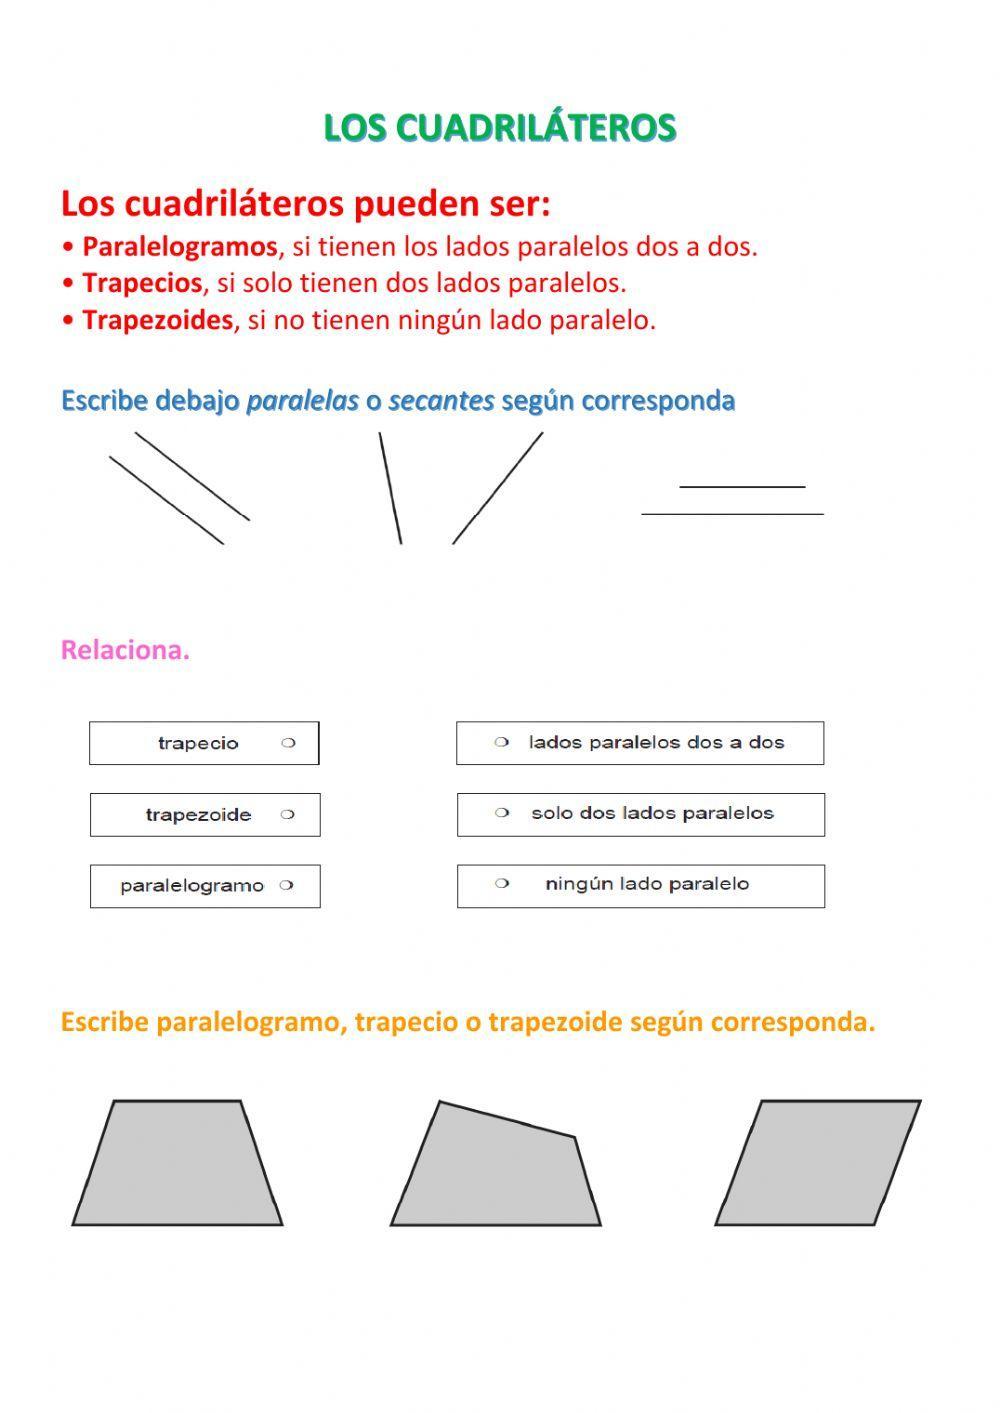 Clases de triángulos y clases de cuadriláteros